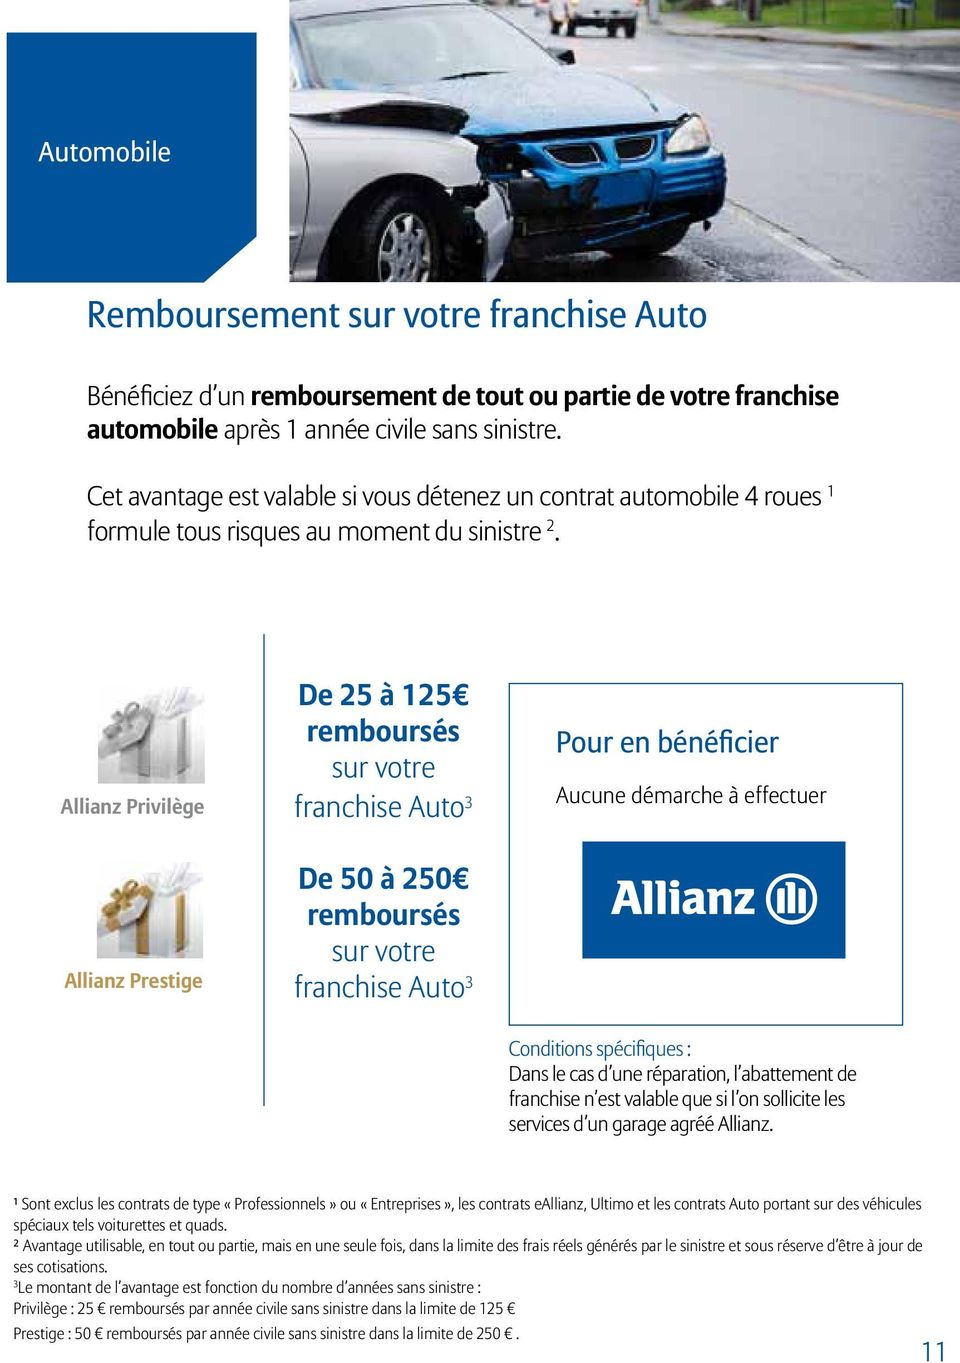 Allianz Privilège De 25 à 125 remboursés sur votre franchise Auto 3 De 50 à 250 remboursés sur votre franchise Auto 3 Pour en bénéficier Aucune démarche à effectuer Conditions spécifiques : Dans le